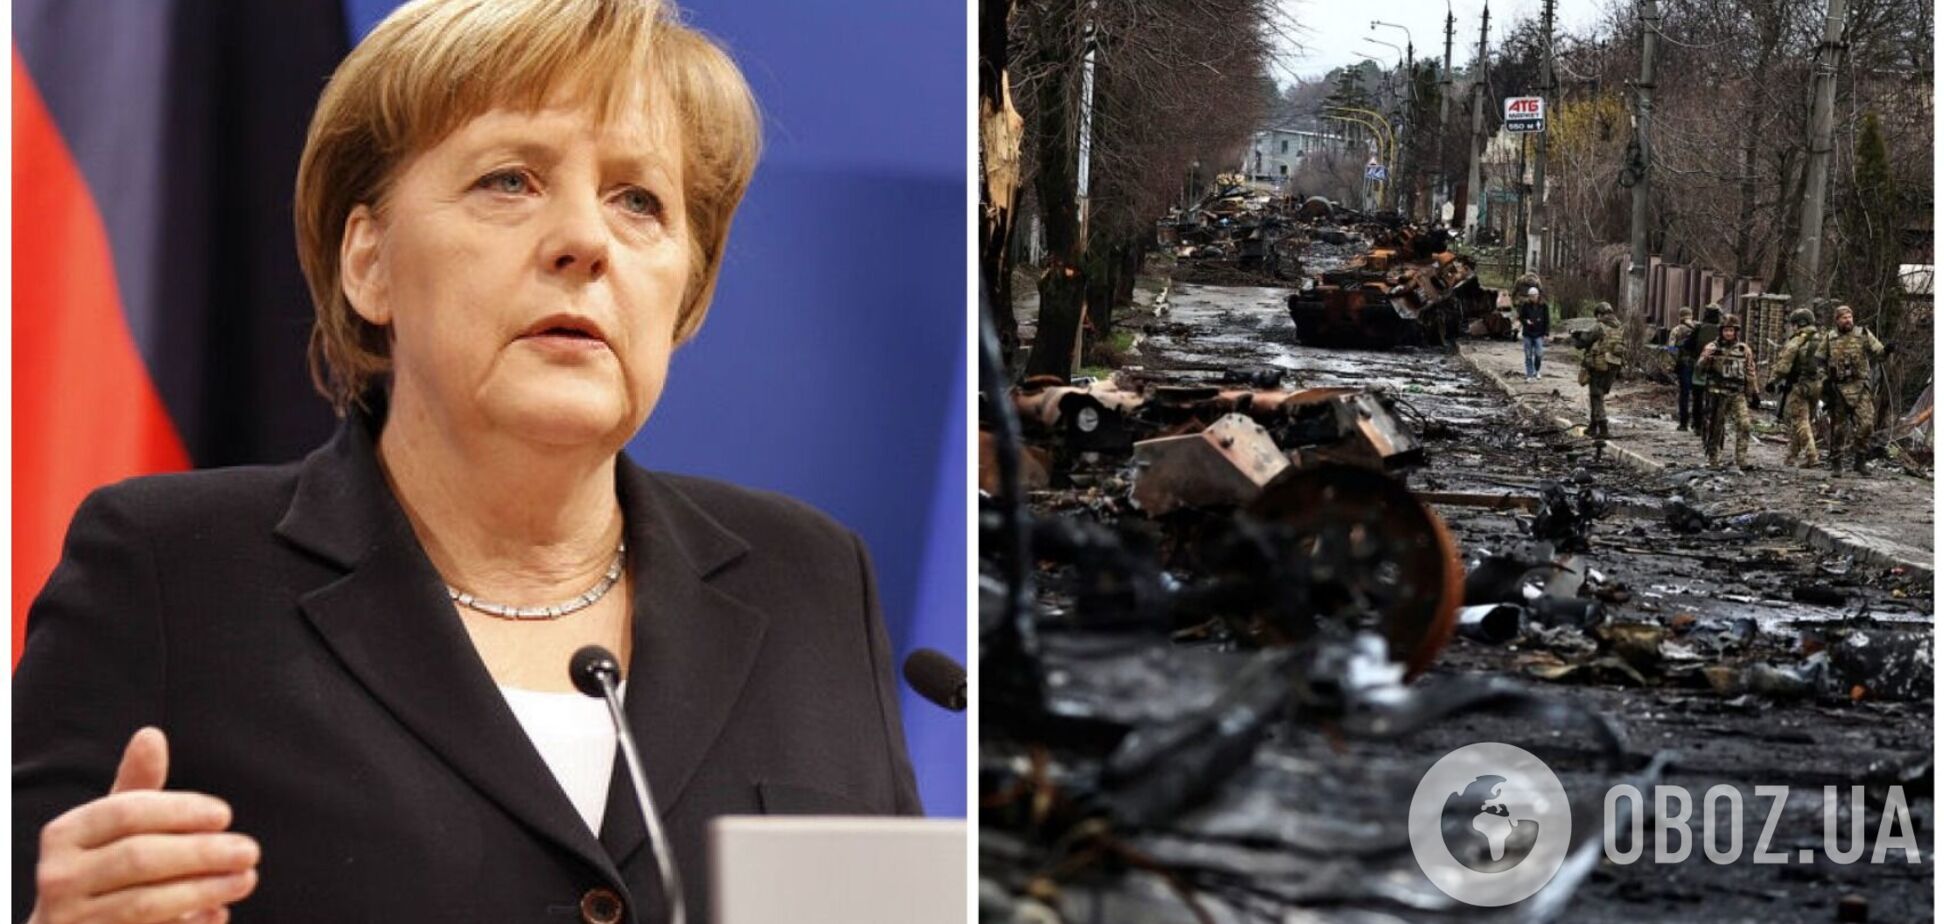 Меркель розповіла, чому замість поїздки до зруйнованої Бучі обрала подорож до Італії